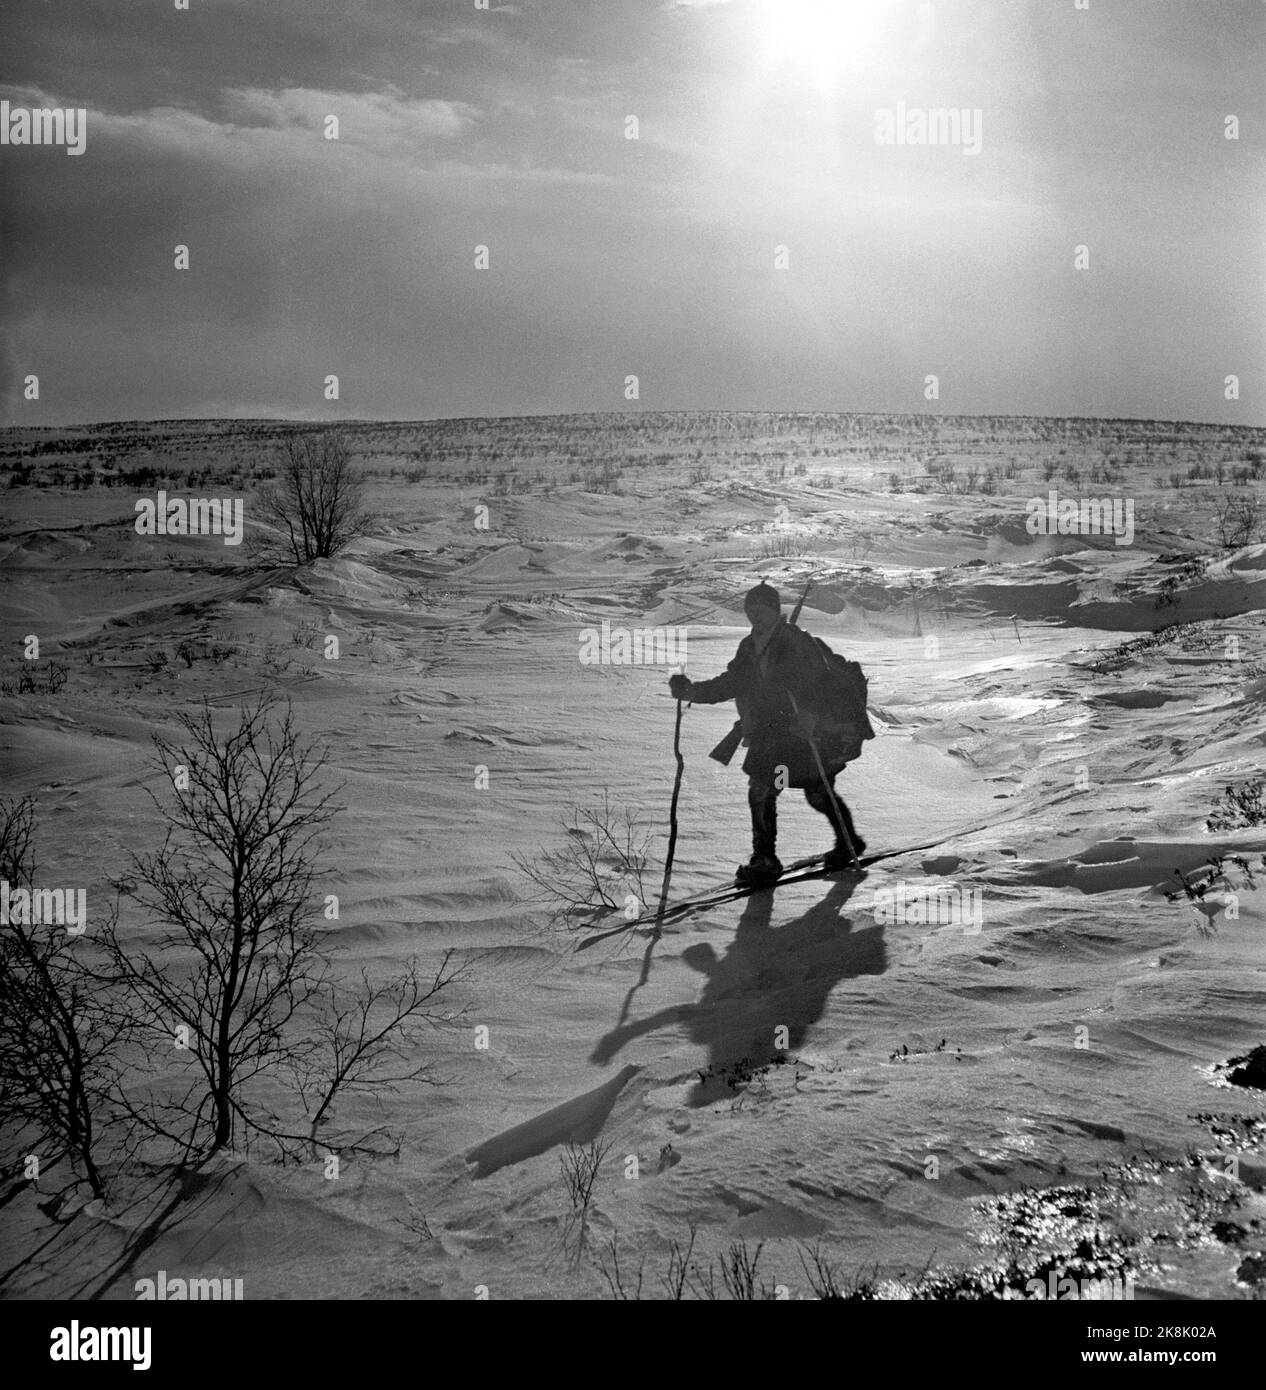 Finnmark à l'hiver 1949. Chasse au loup sur Finnmarksvidda. Le Ministère de l'agriculture a alloué de l'argent à la chasse aux loups à Finnmark après que de grandes troupeaux de rennes aient été endommagés par des loups. L'action a fait appel à des chasseurs locaux et loués, ainsi qu'à des vols et à des wagons de ceinture. Ici, un des chasseurs sâmes, Aslak Aslaksen Sara, sur son chemin au-delà de Finnmarksvidda, dans le contre-jour. Photo: Sverre A. Børretzen / actuel / NTB Banque D'Images